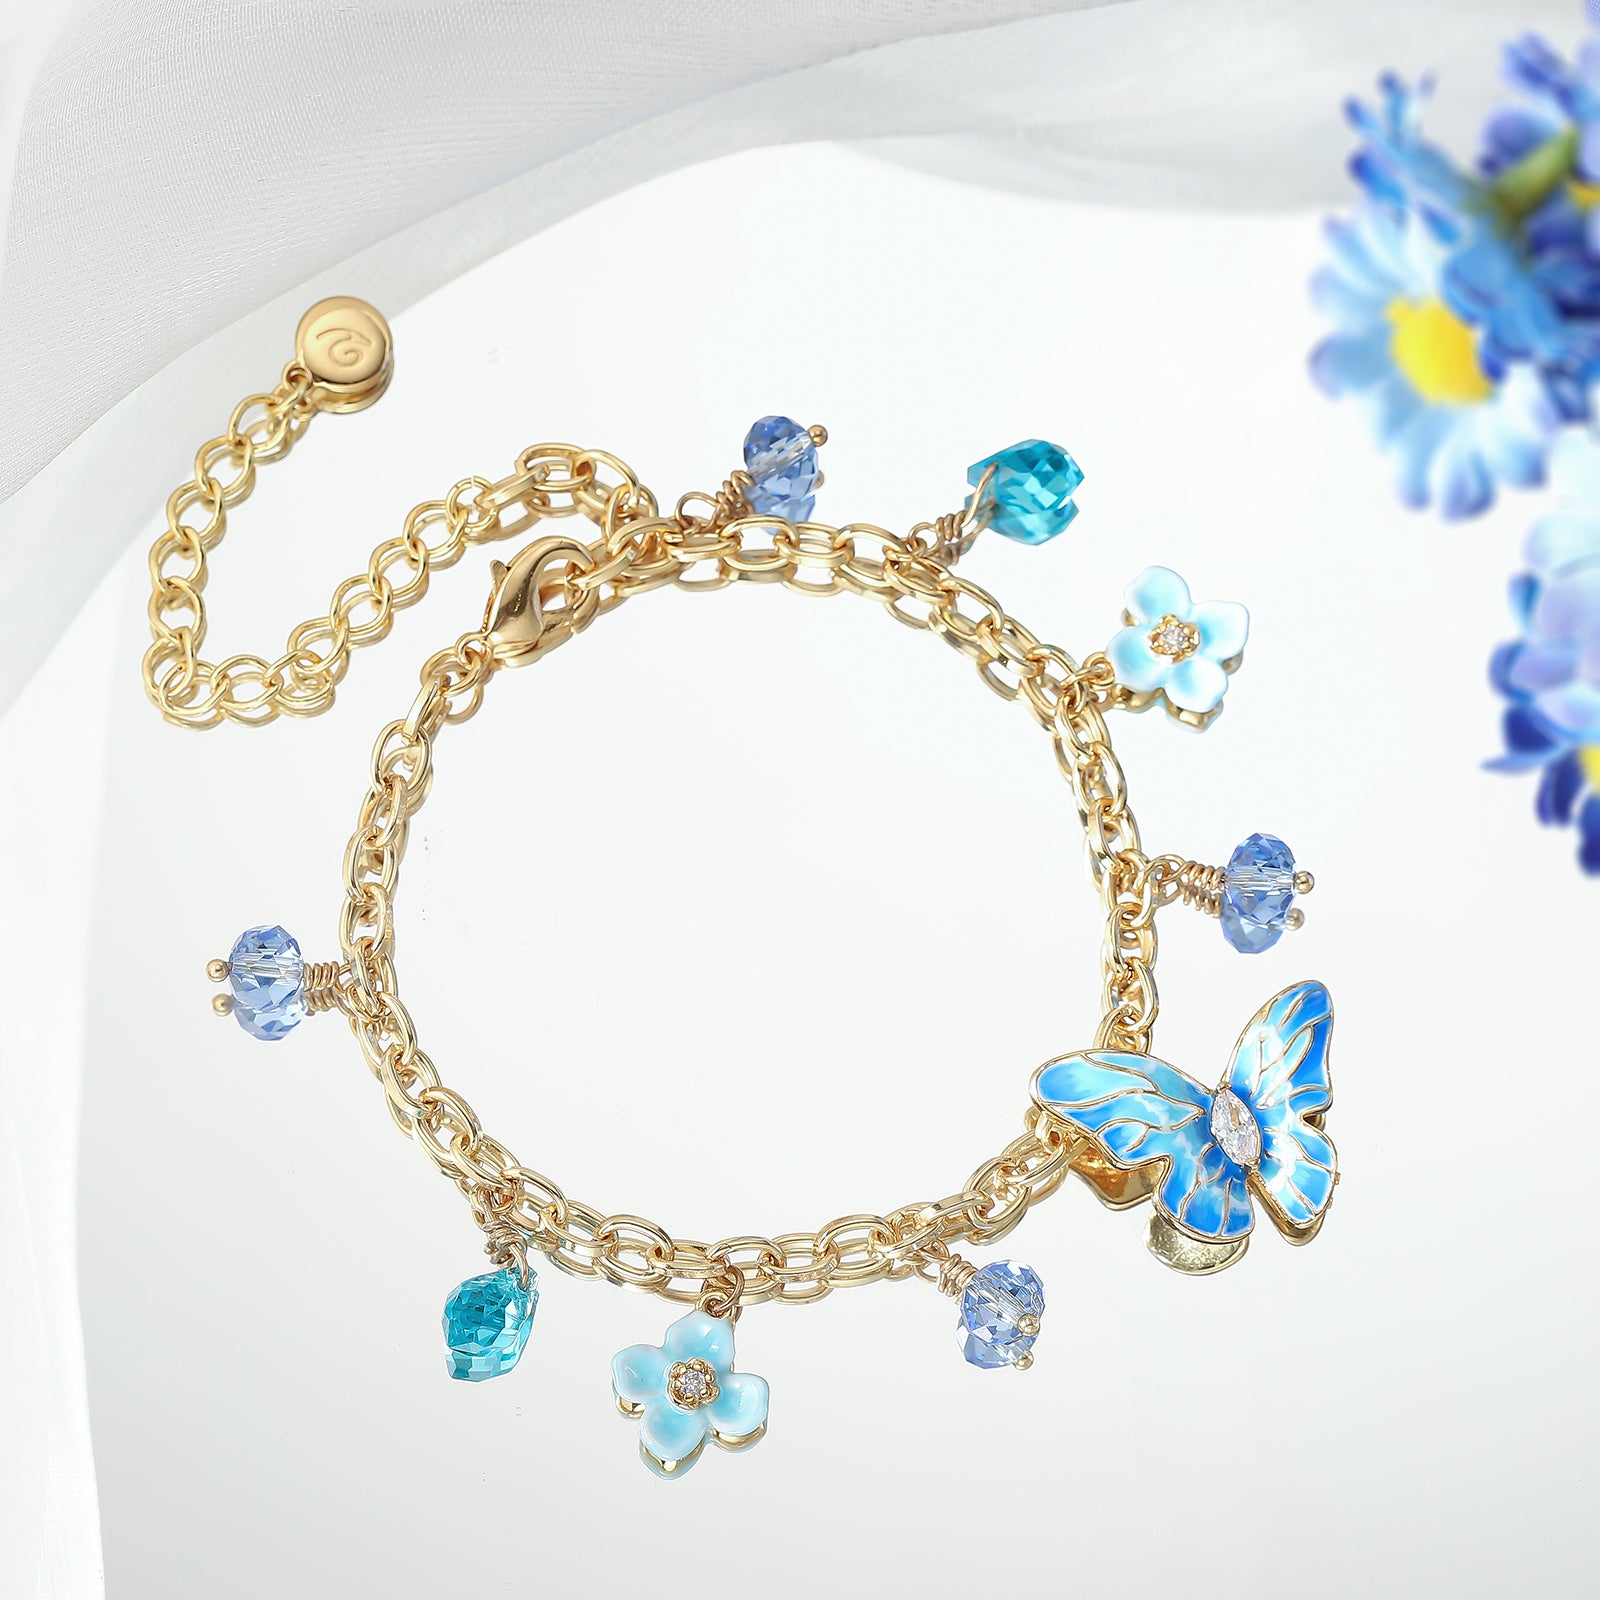 Blue Morpho Butterfly Enamel Bracelet Birthday Jewelry Gift for Woman